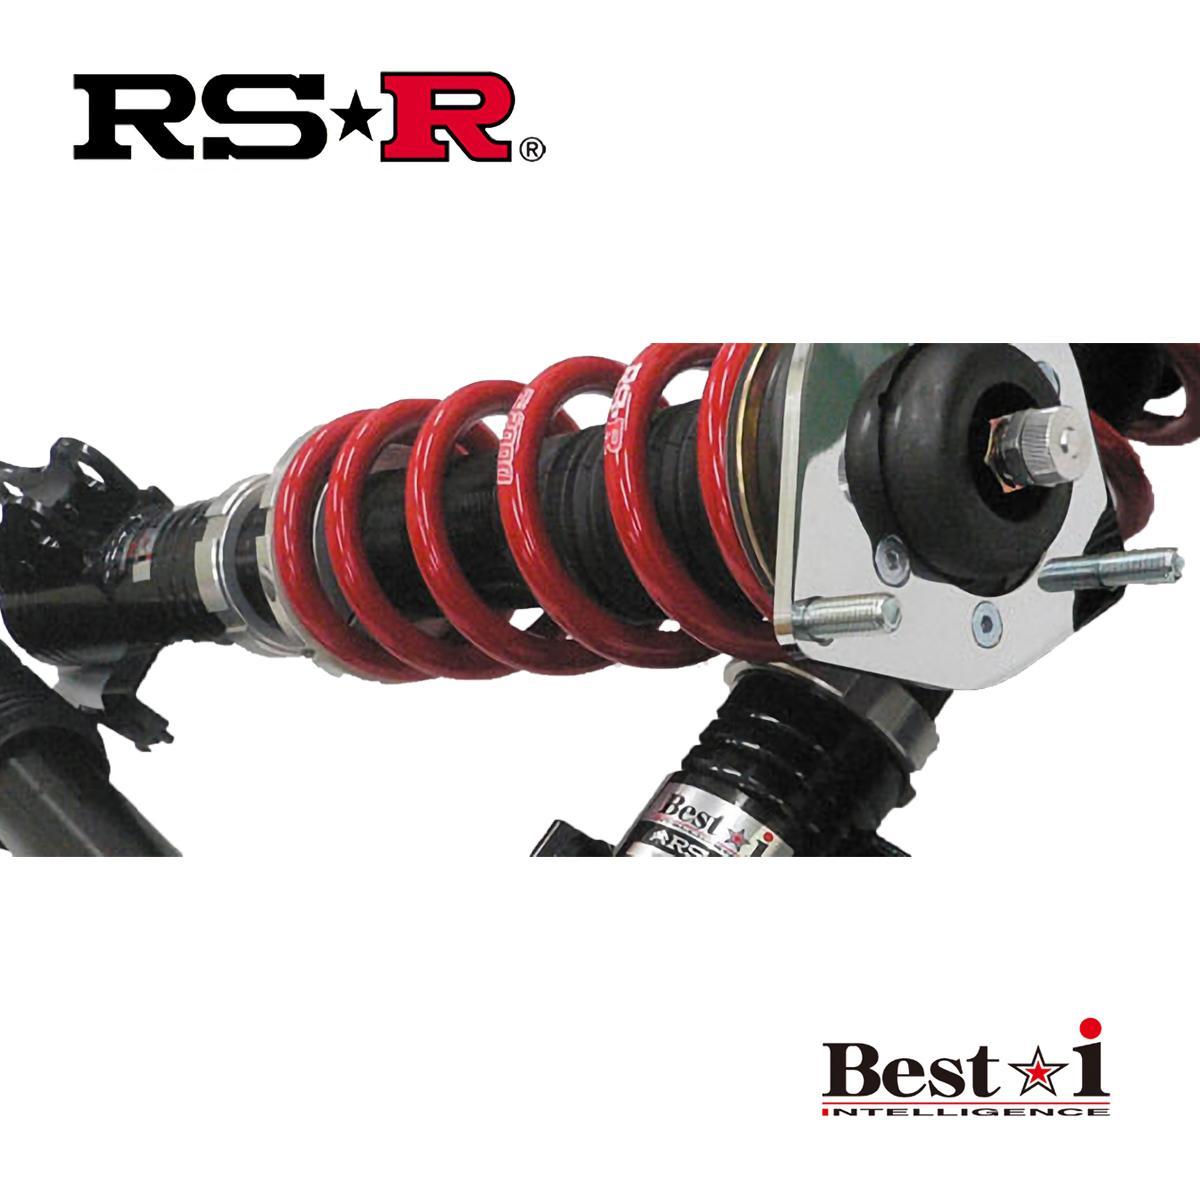 RSR プリウス ZVW51 車高調 リア車高調整:ネジ式/ハードバネレート仕様 BIT580H RS-R Best-i ベストi_画像1